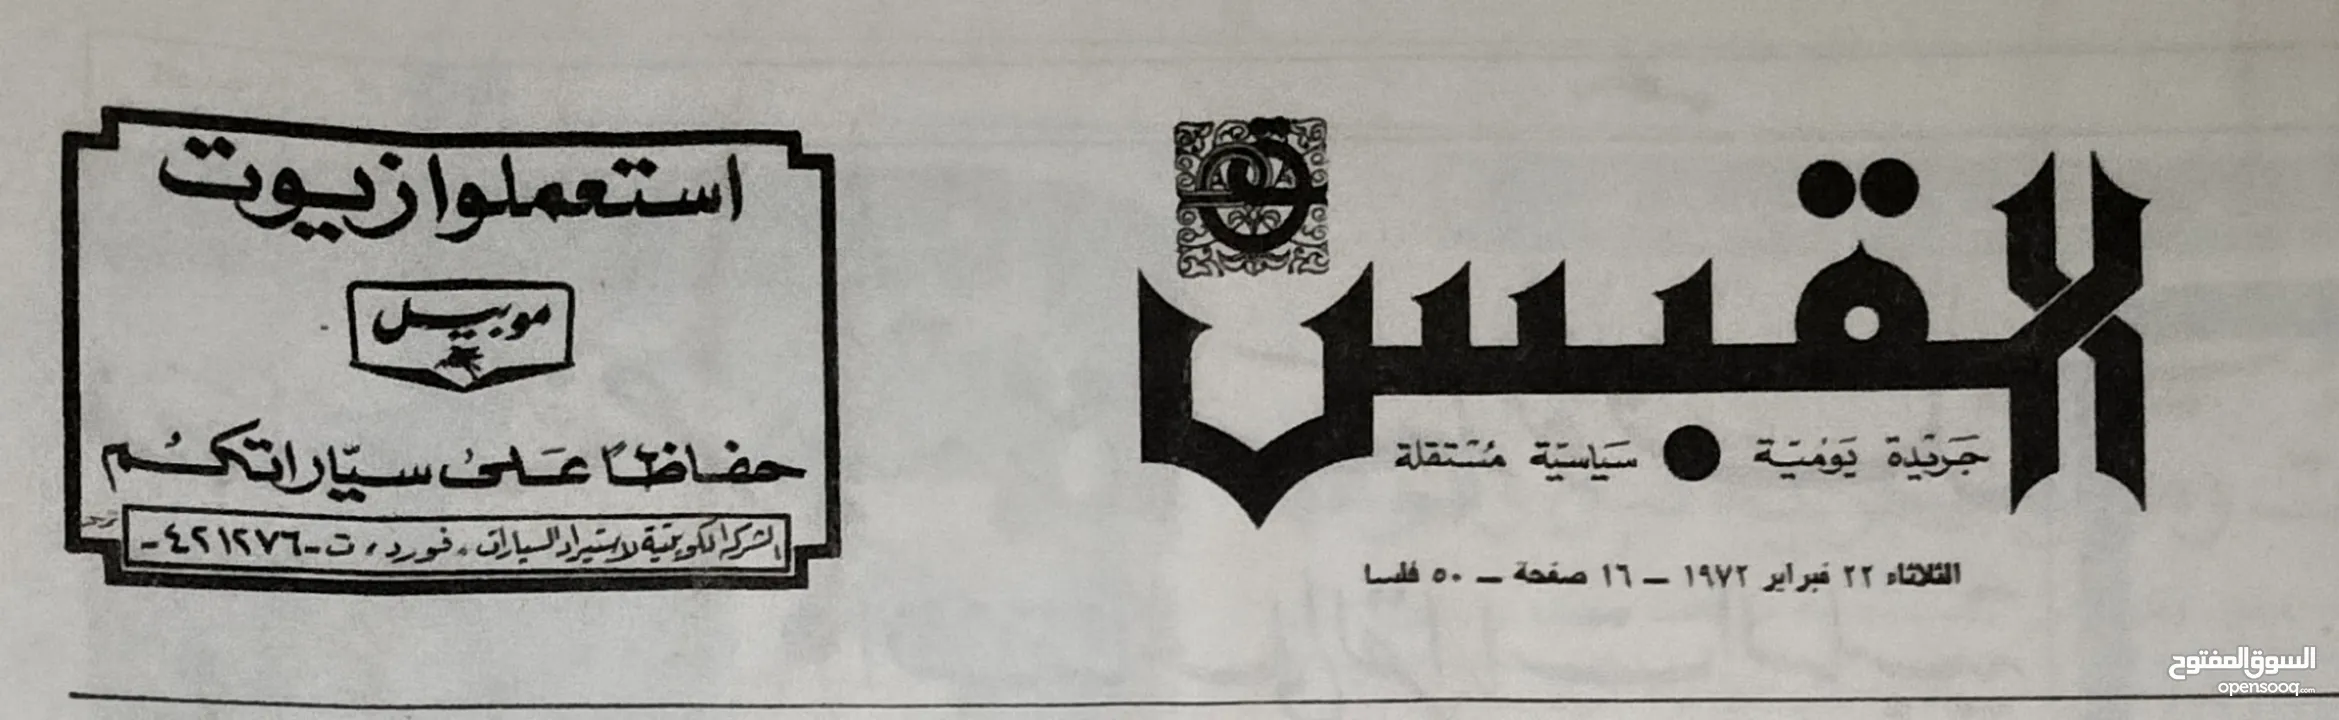 نسخة نادرة من جريدة القبس 1972